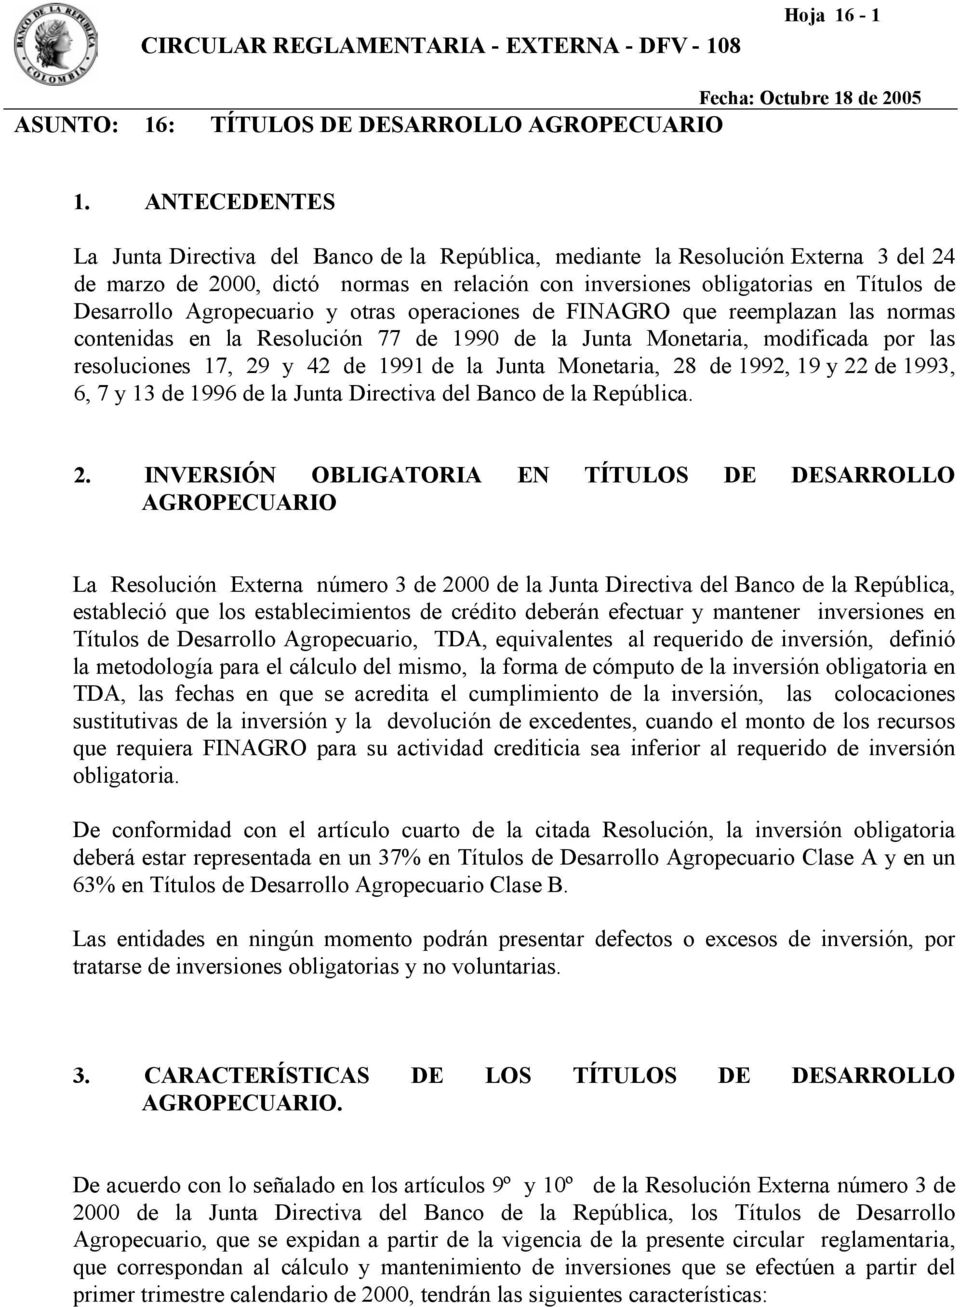 Agropecuario y otras operaciones de FINAGRO que reemplazan las normas contenidas en la Resolución 77 de 1990 de la Junta Monetaria, modificada por las resoluciones 17, 29 y 42 de 1991 de la Junta